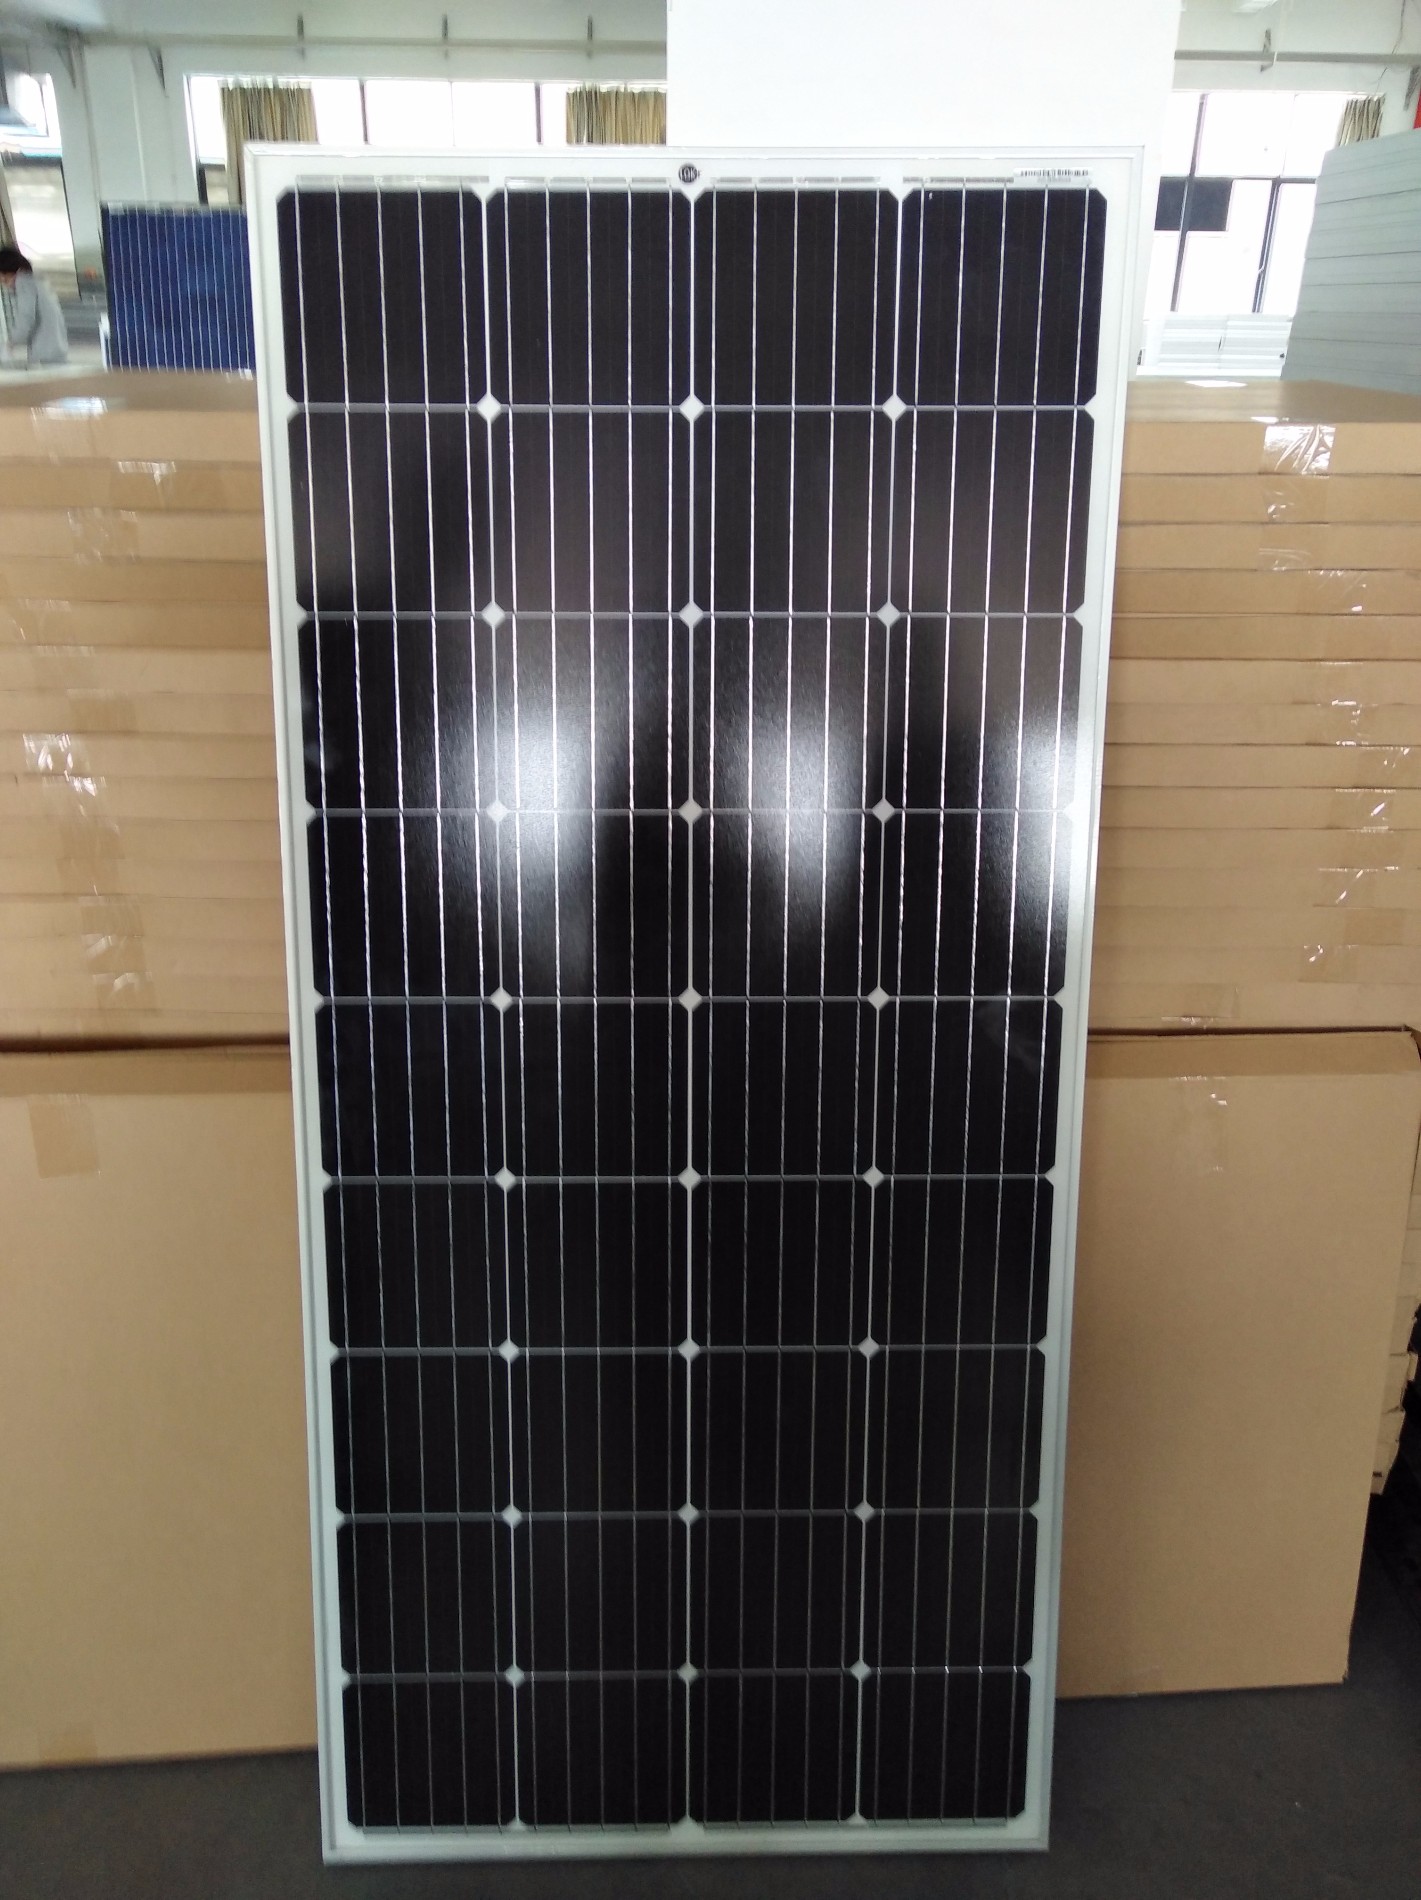 Verkauf Einzelnes Solar-Photovoltaik-Panel 150W, Kaufen Sie Solarzellen und -panels Marken